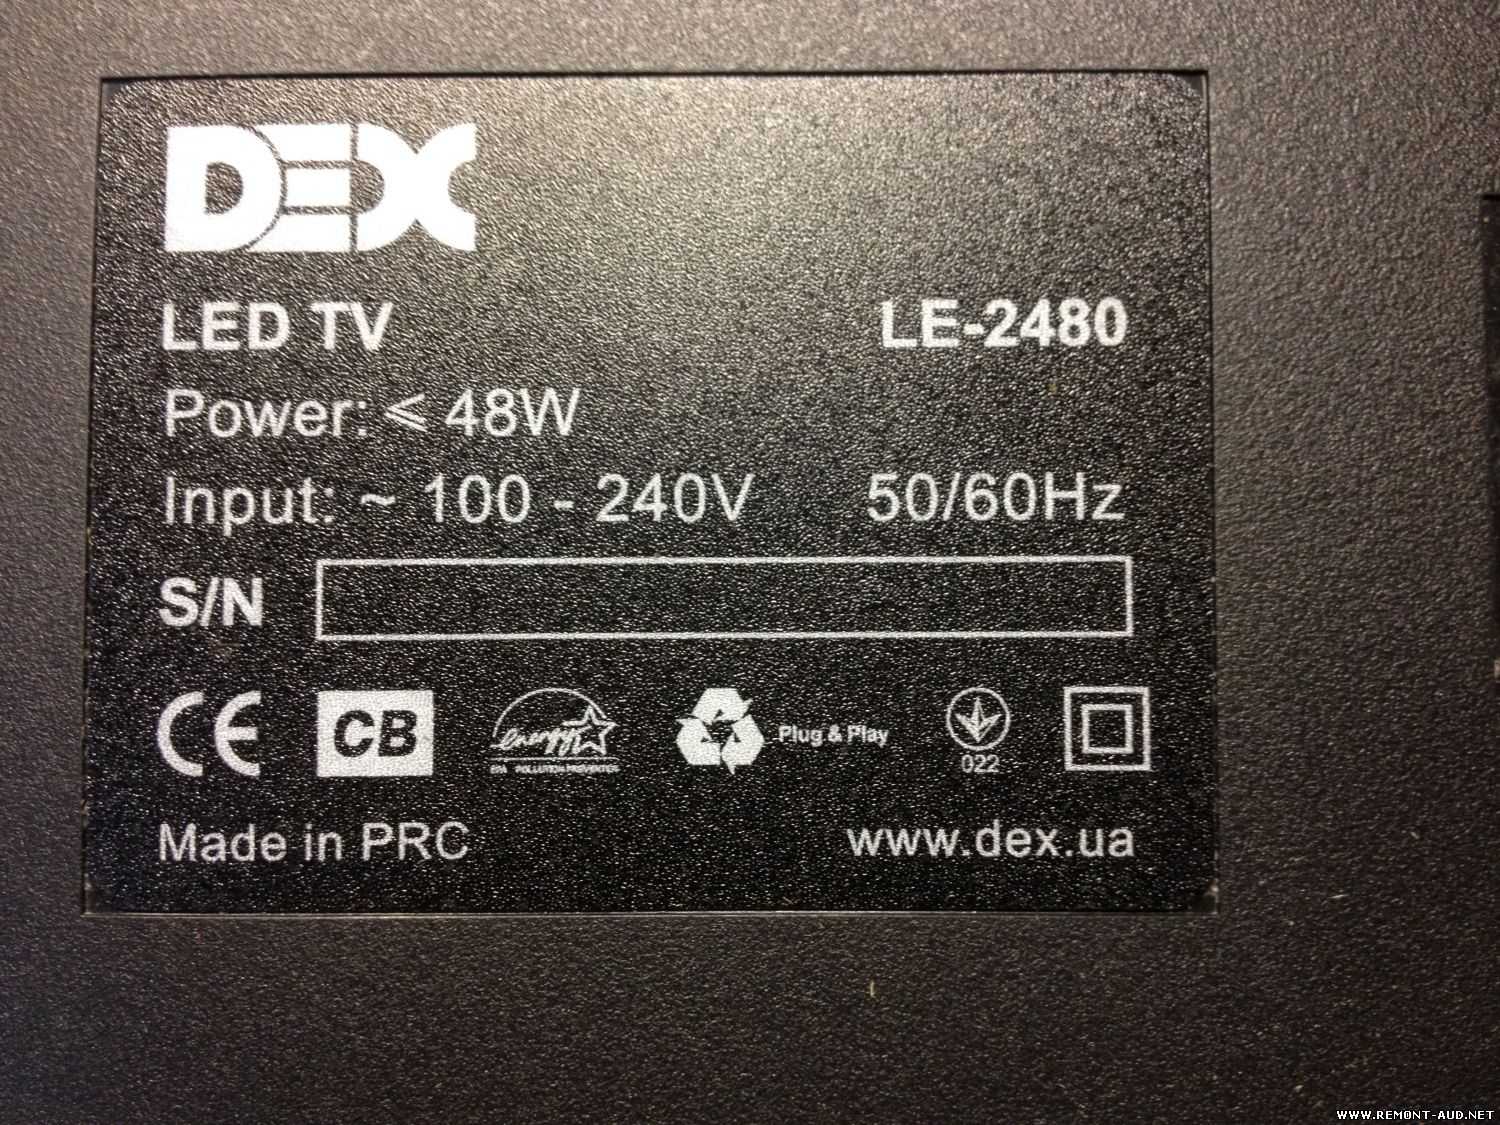 Dex le-2480 - купить , скидки, цена, отзывы, обзор, характеристики - телевизоры